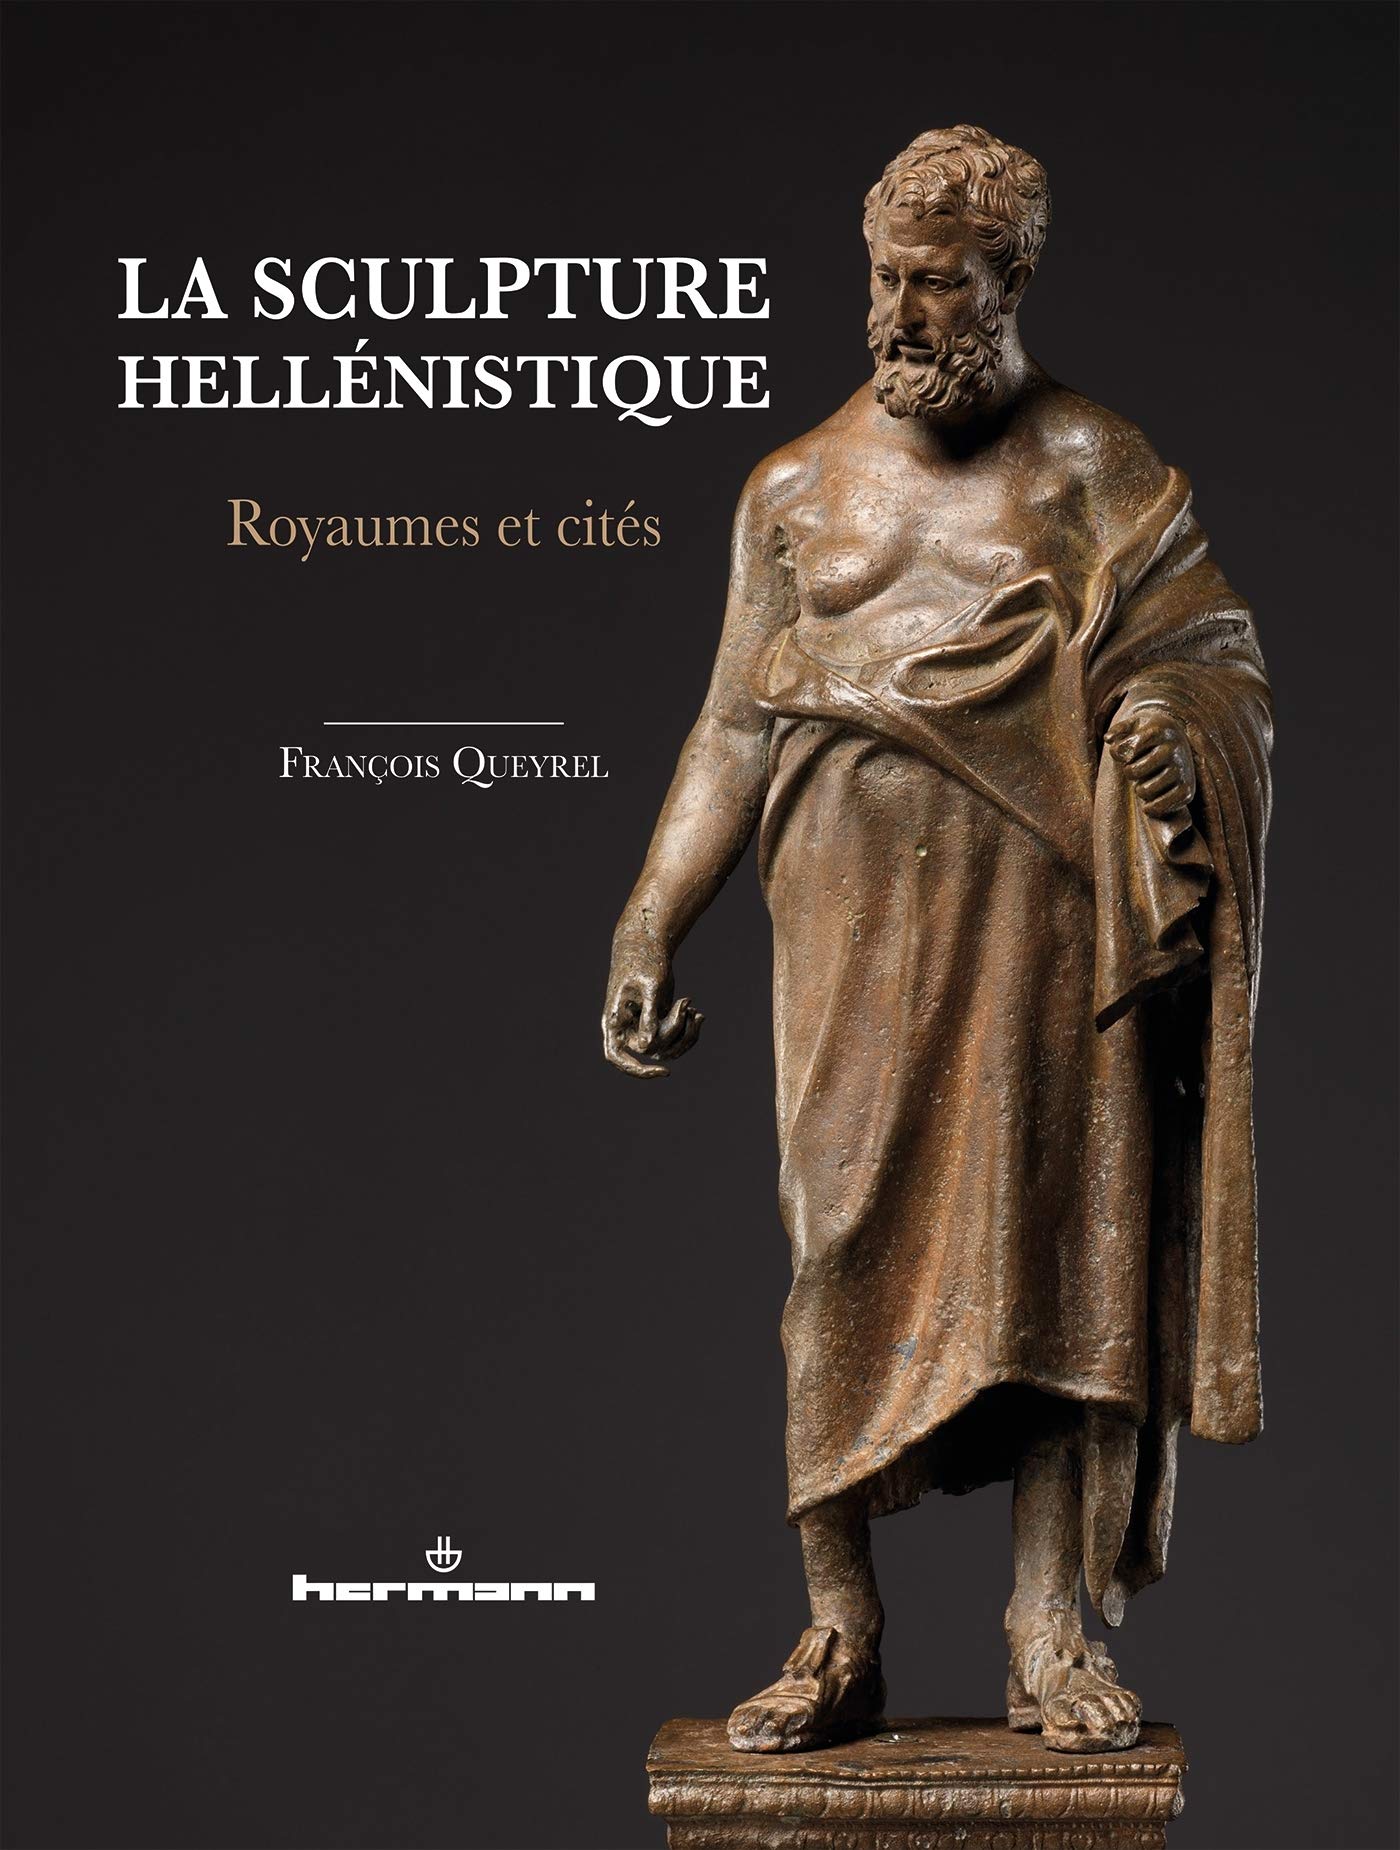 La sculpture hellénistique. Royaumes et cités, 2020, 450 p.